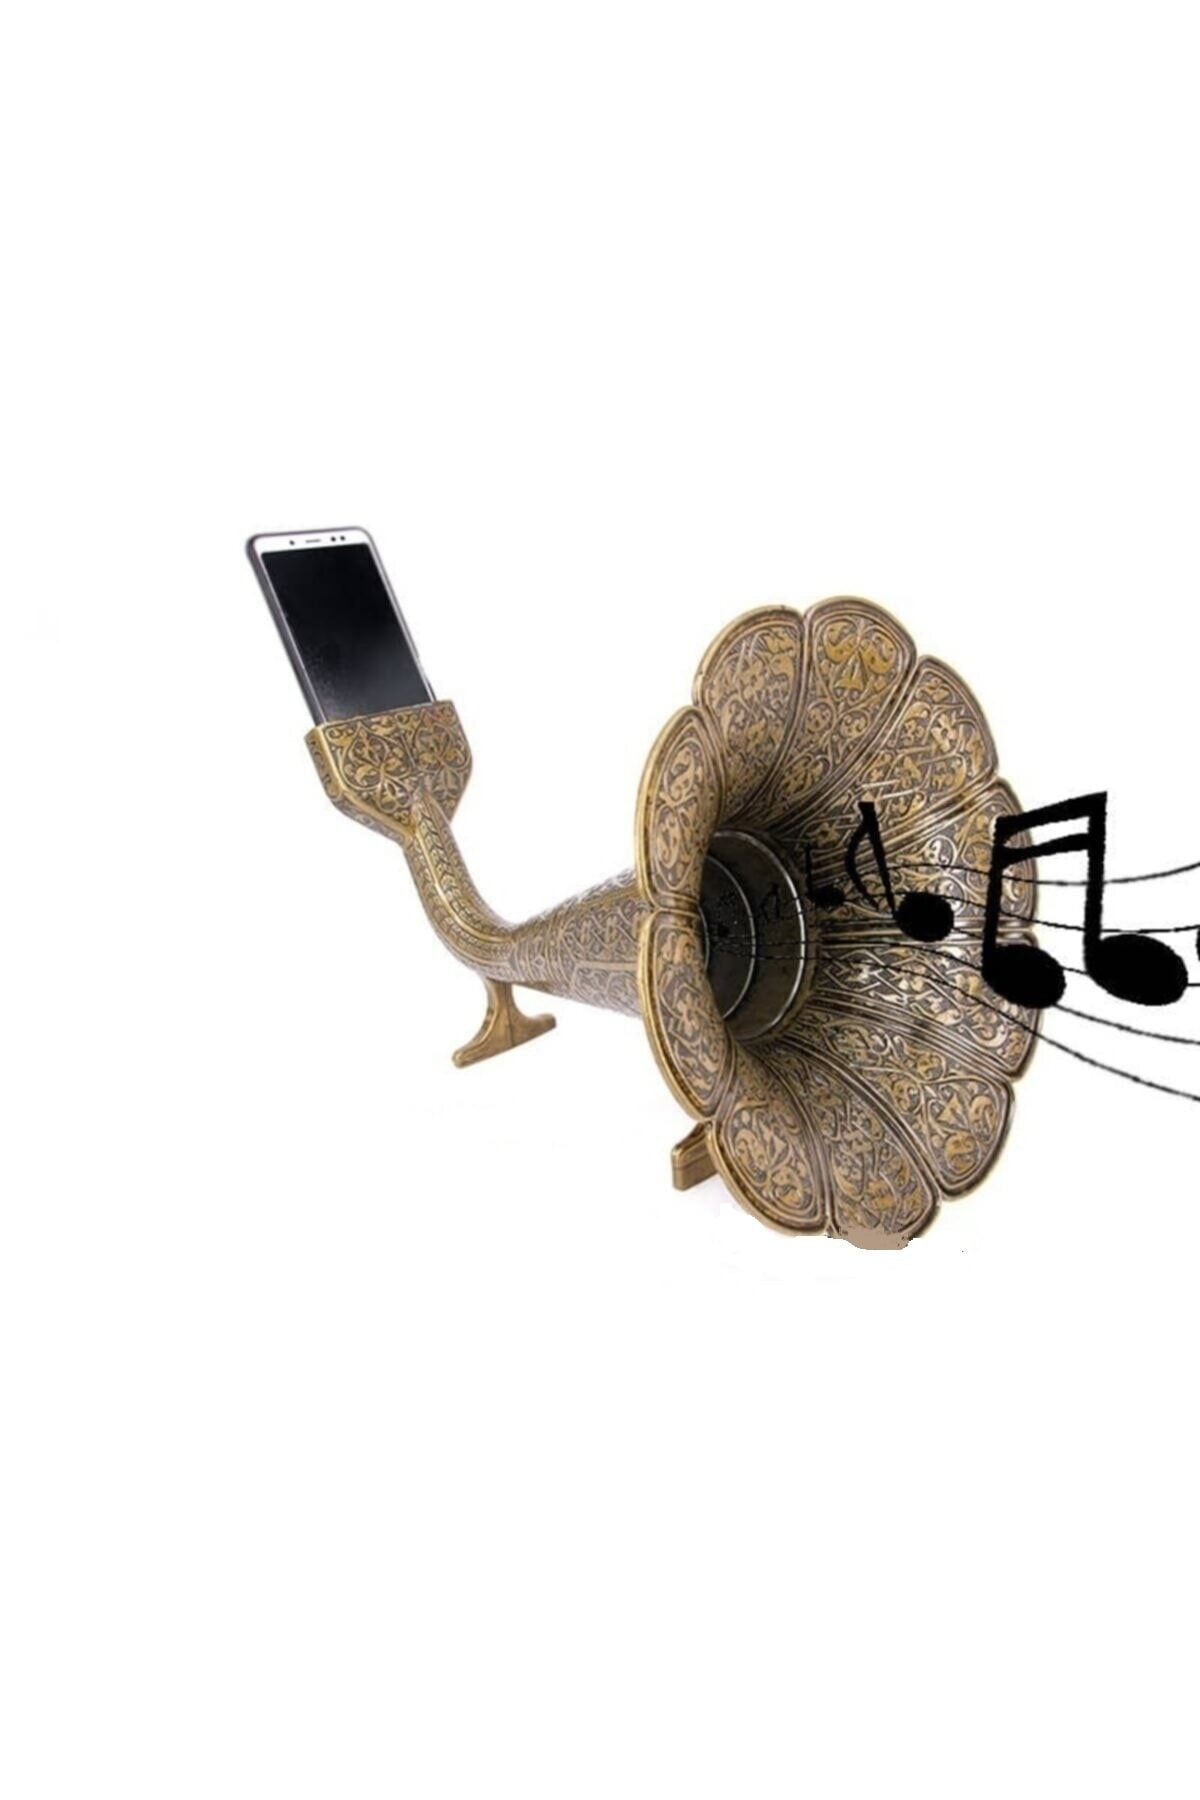 Kelepir Fırsatlar Antik Bakır Renkli Metal Gramafon Tarzı Akustik Eko Sesli Cep Telefonu Ses Yükselticisi